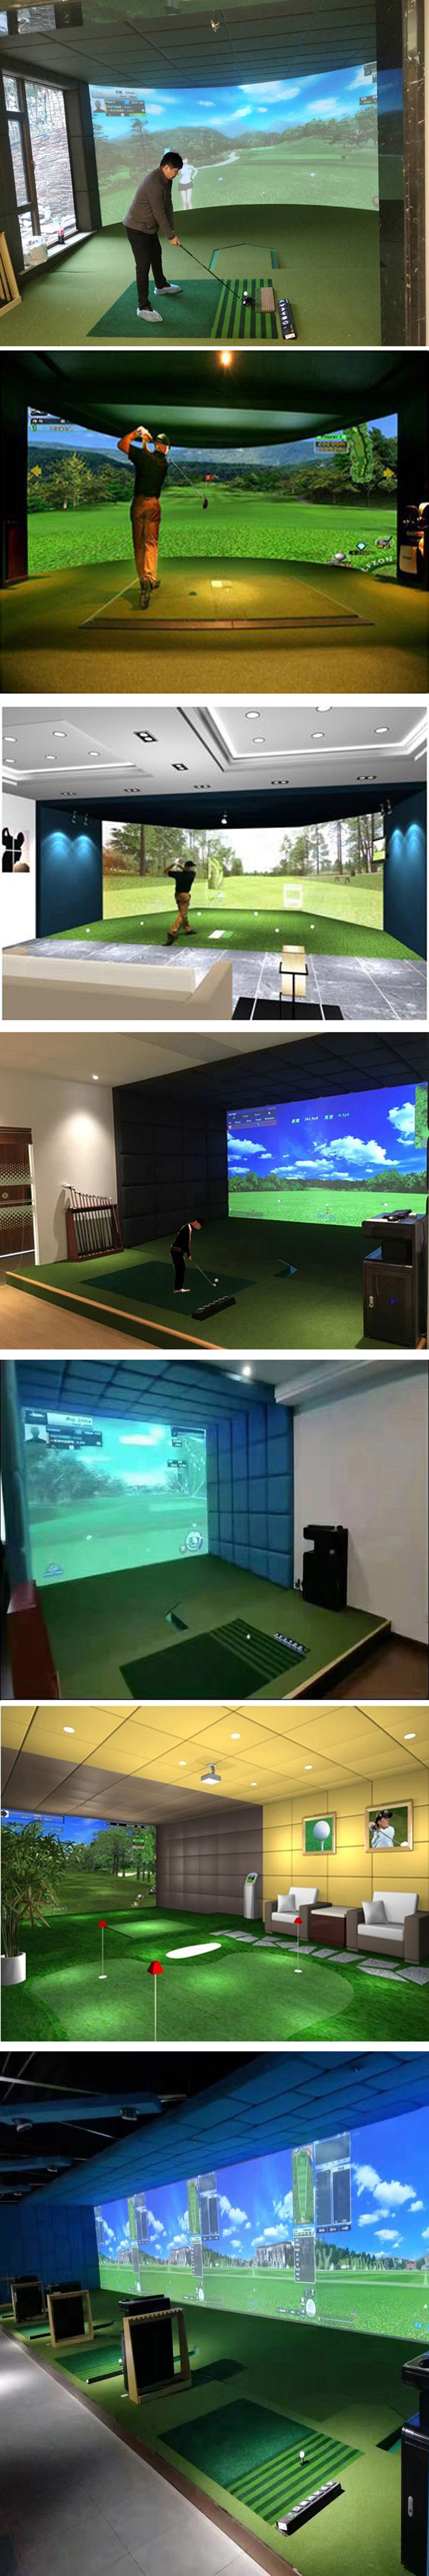 室内高尔夫模拟器设备练习 一.jpg